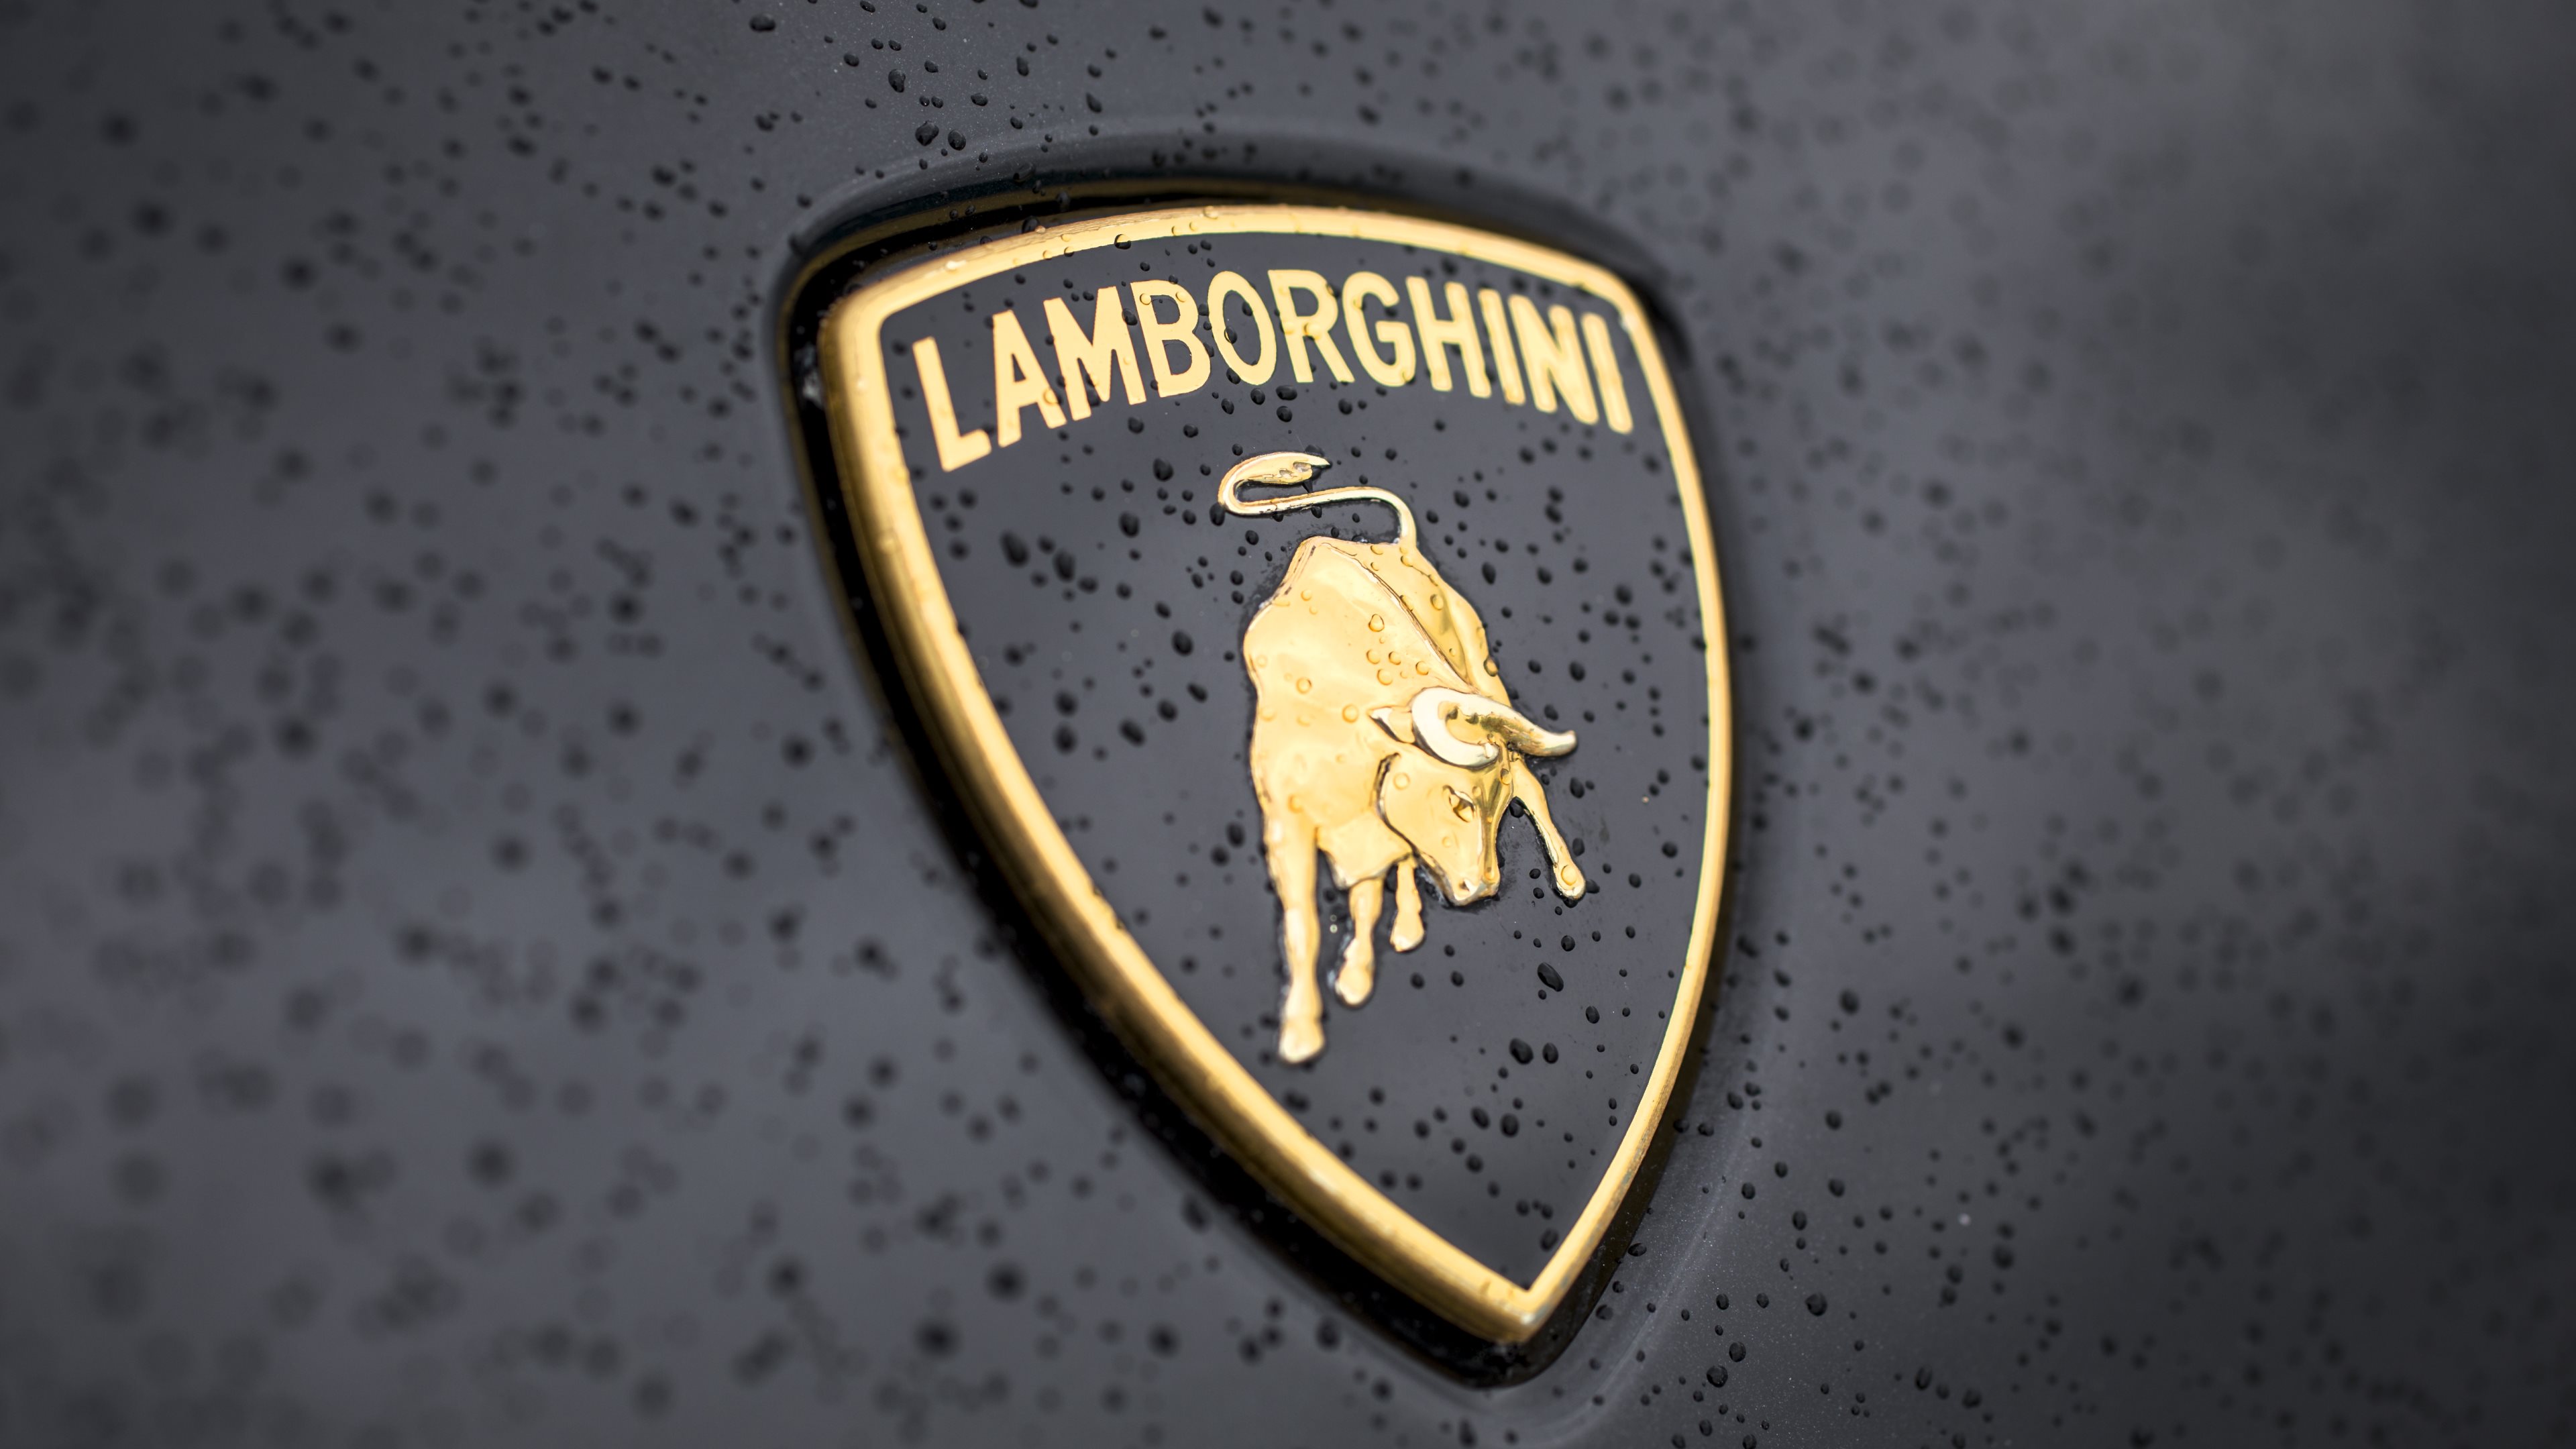 New Lamborghini URUS 2018 - The World Best SUV - YouTube